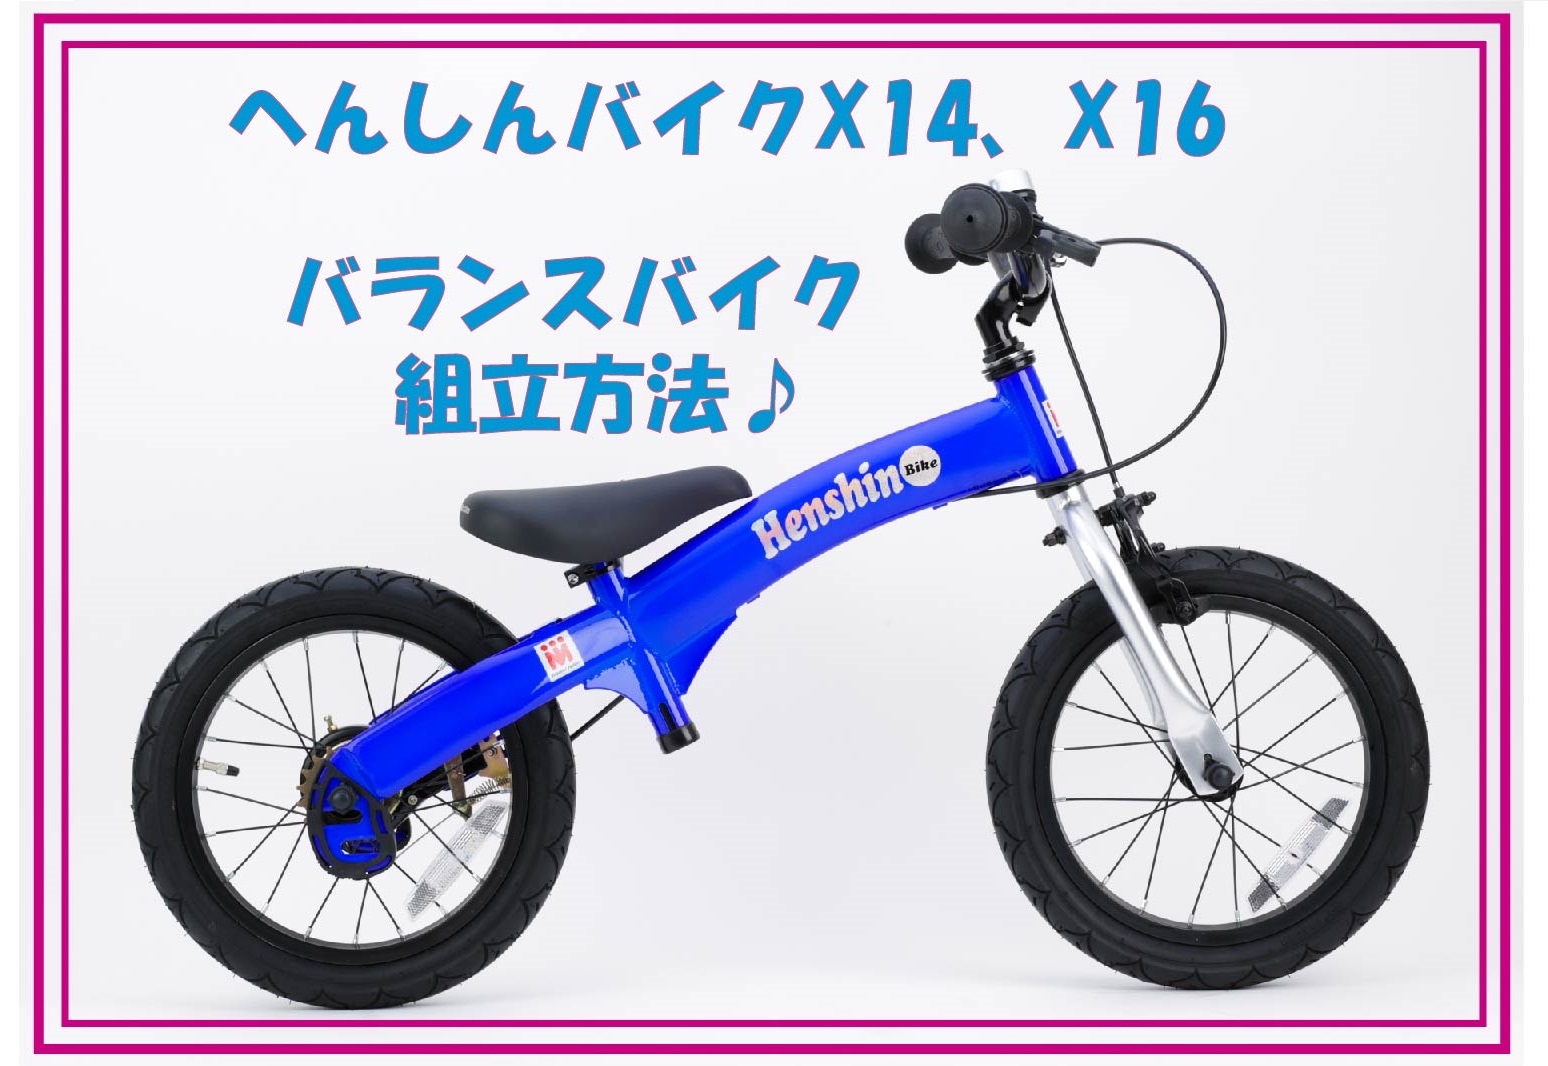 へんしんバイク X14 X16のバランスバイク組み立て方法 画像あり